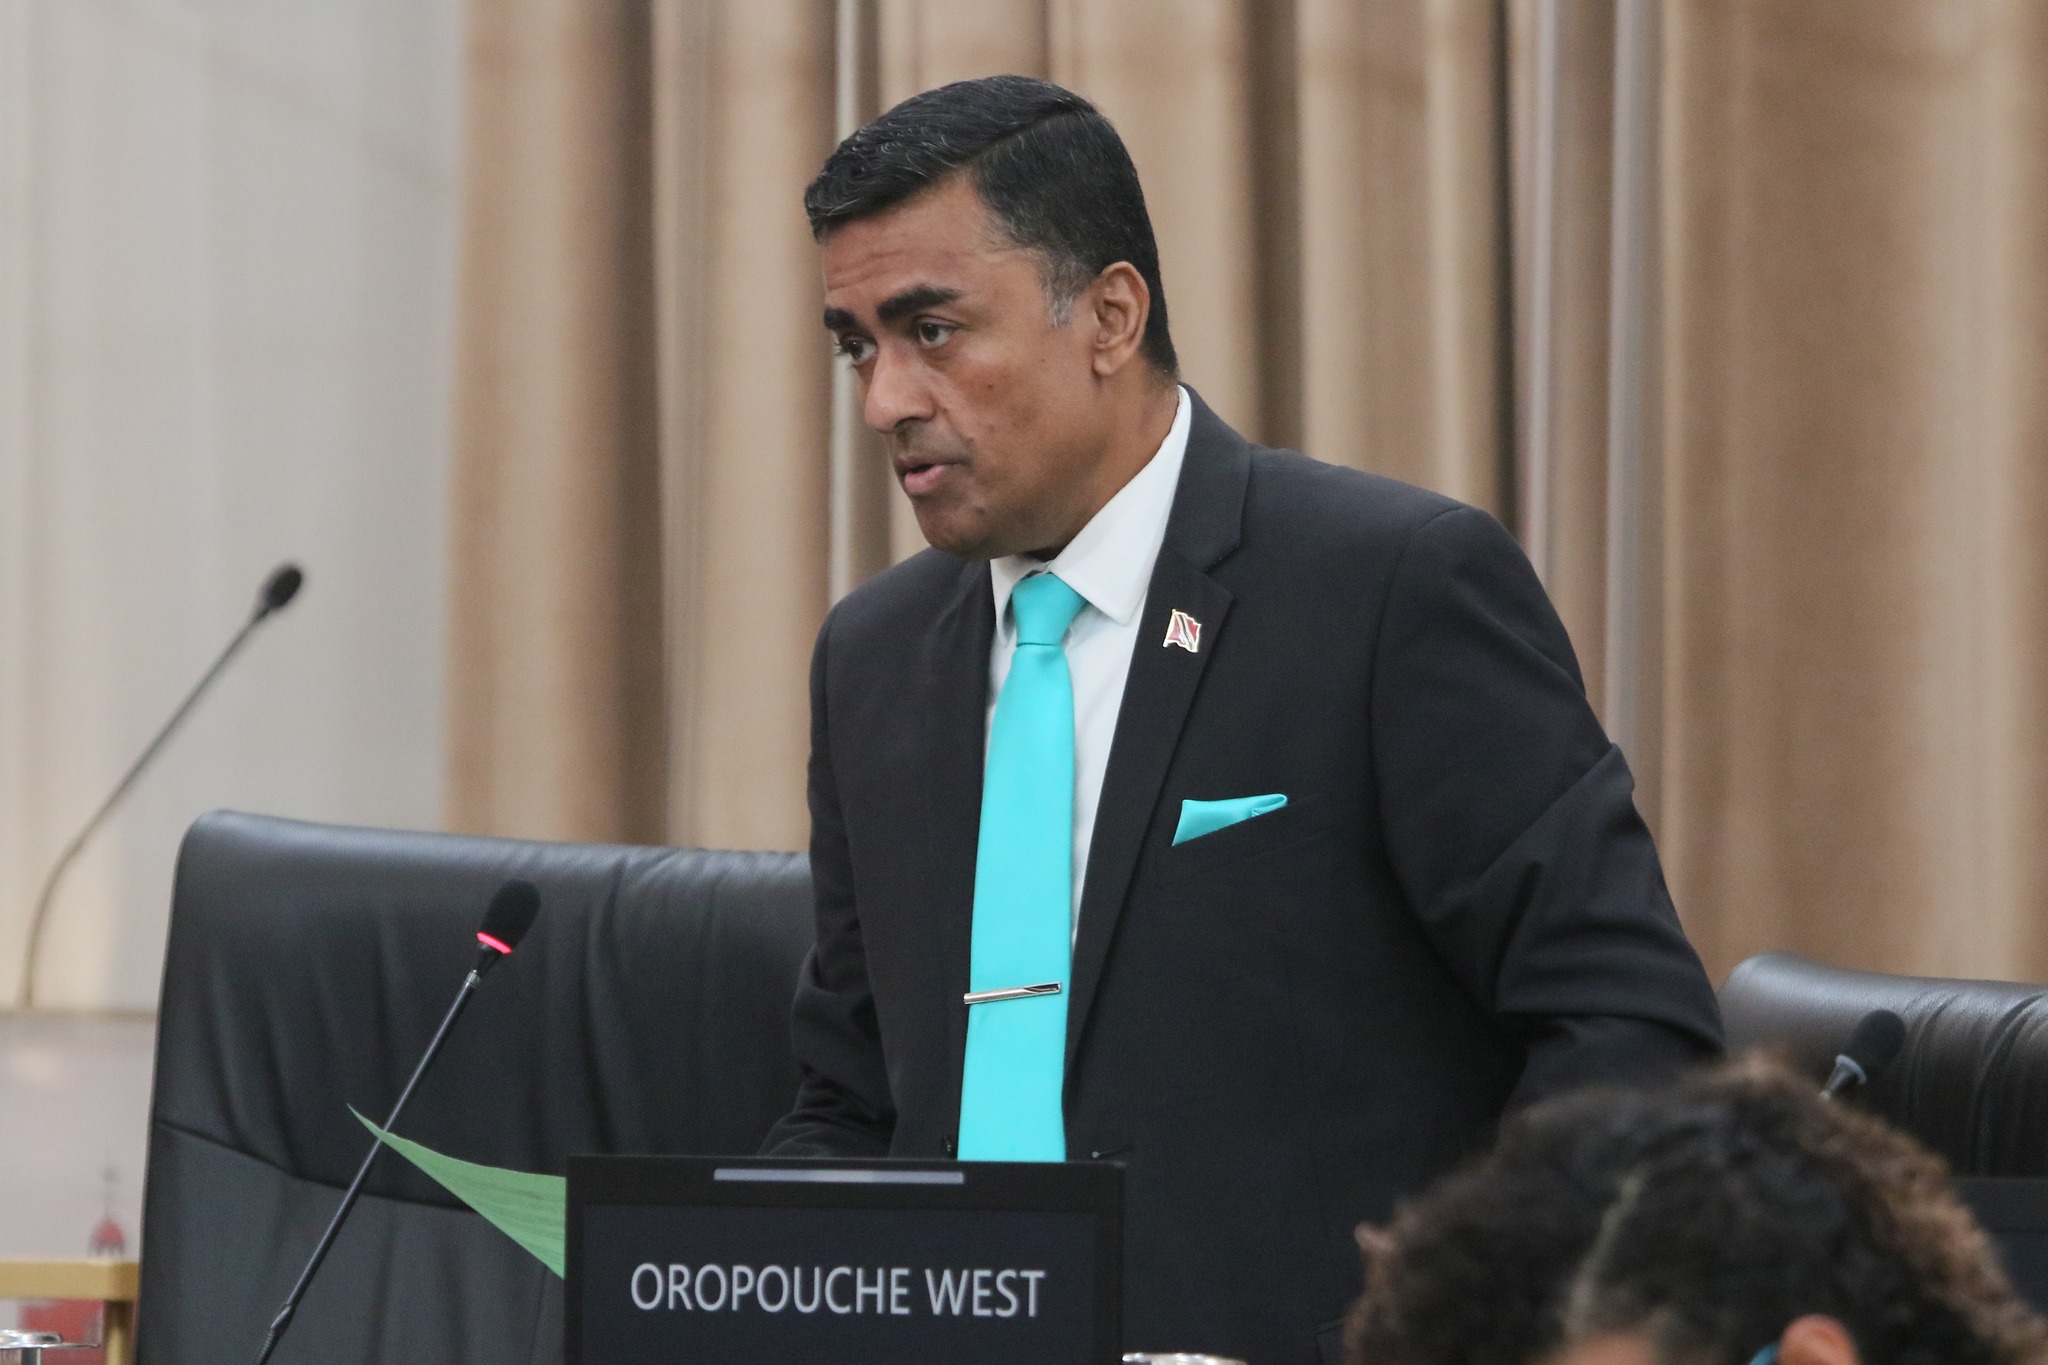 Oropouche West MP trashes UNC defectors